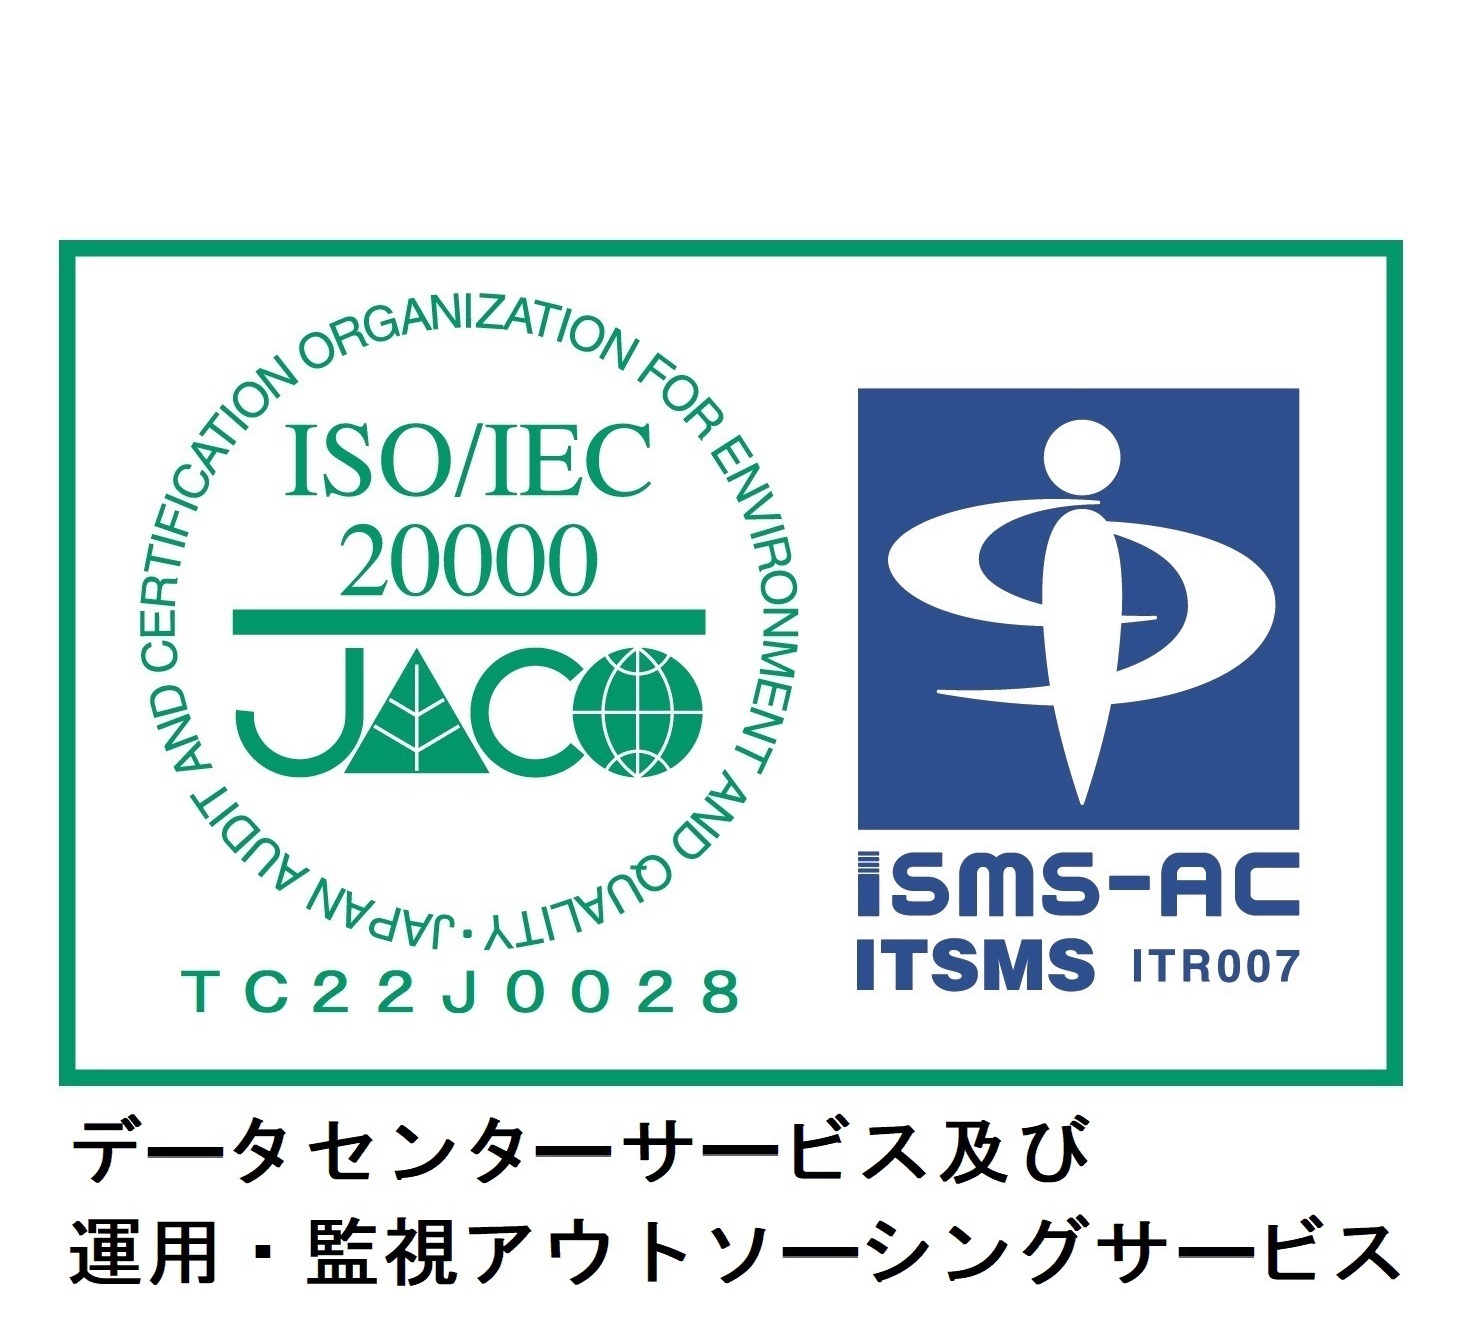 ISO/IEC20000JACO　ISMS-AC